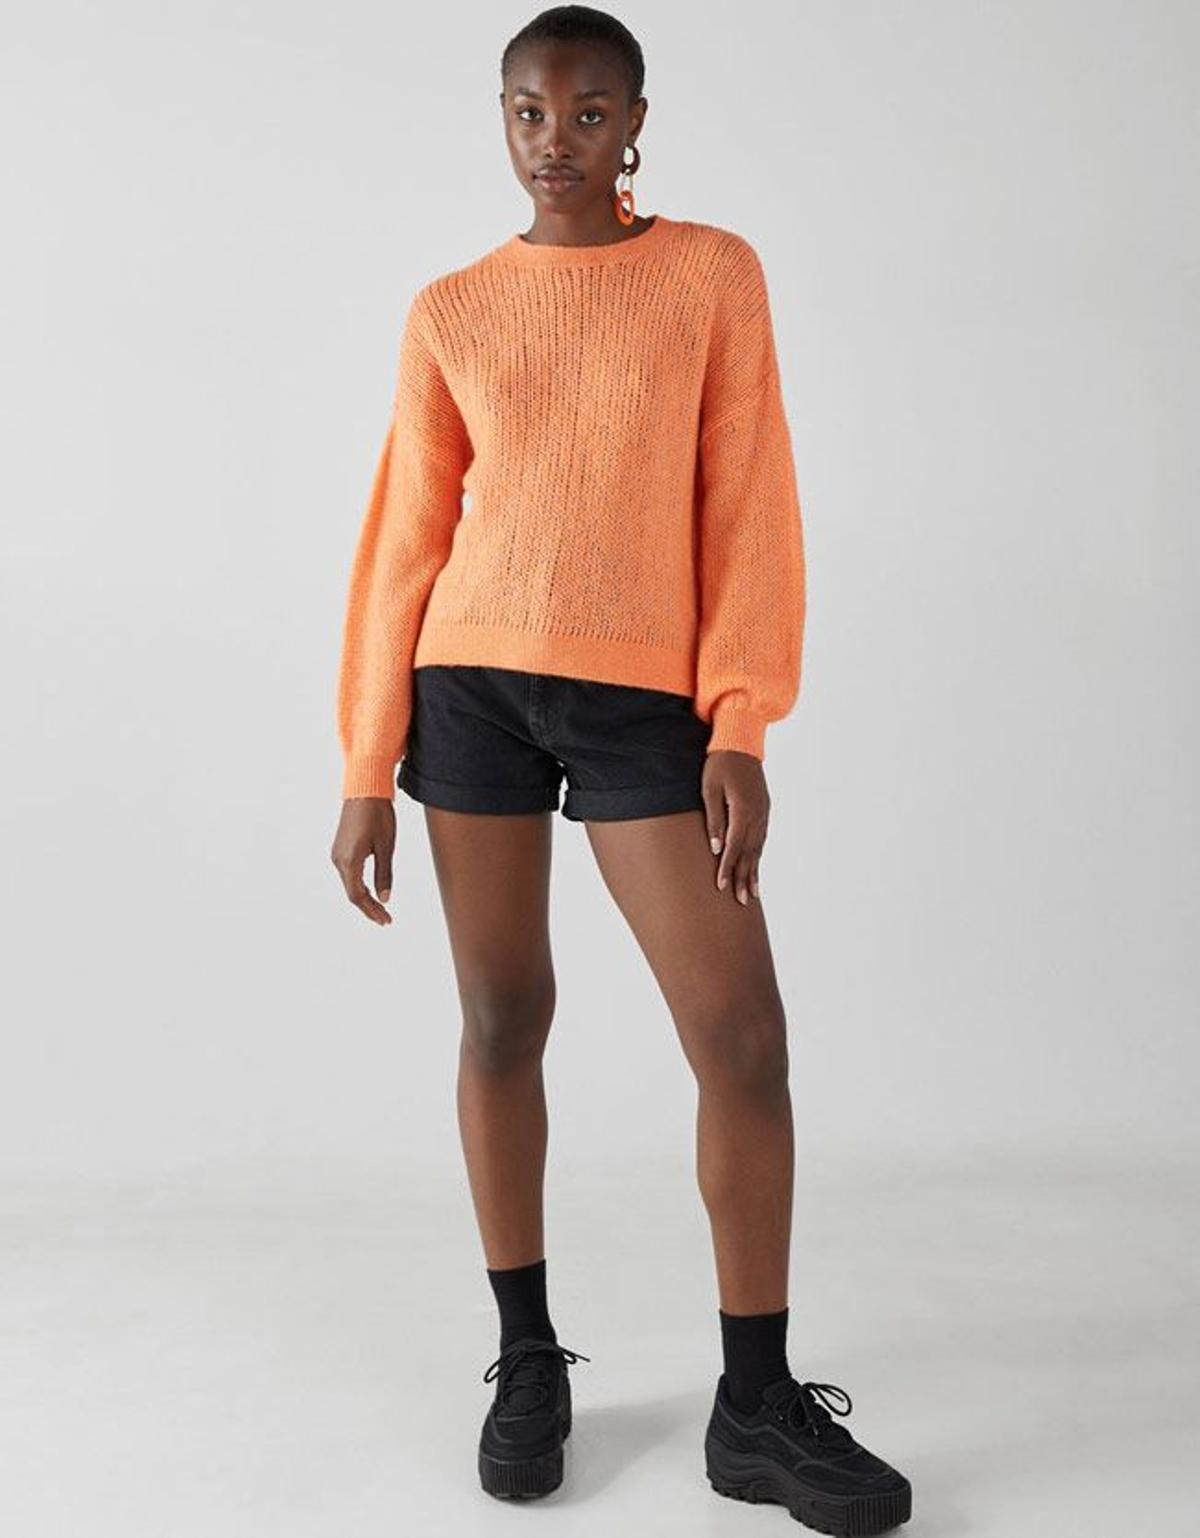 Moda 'living coral': jersey de punto